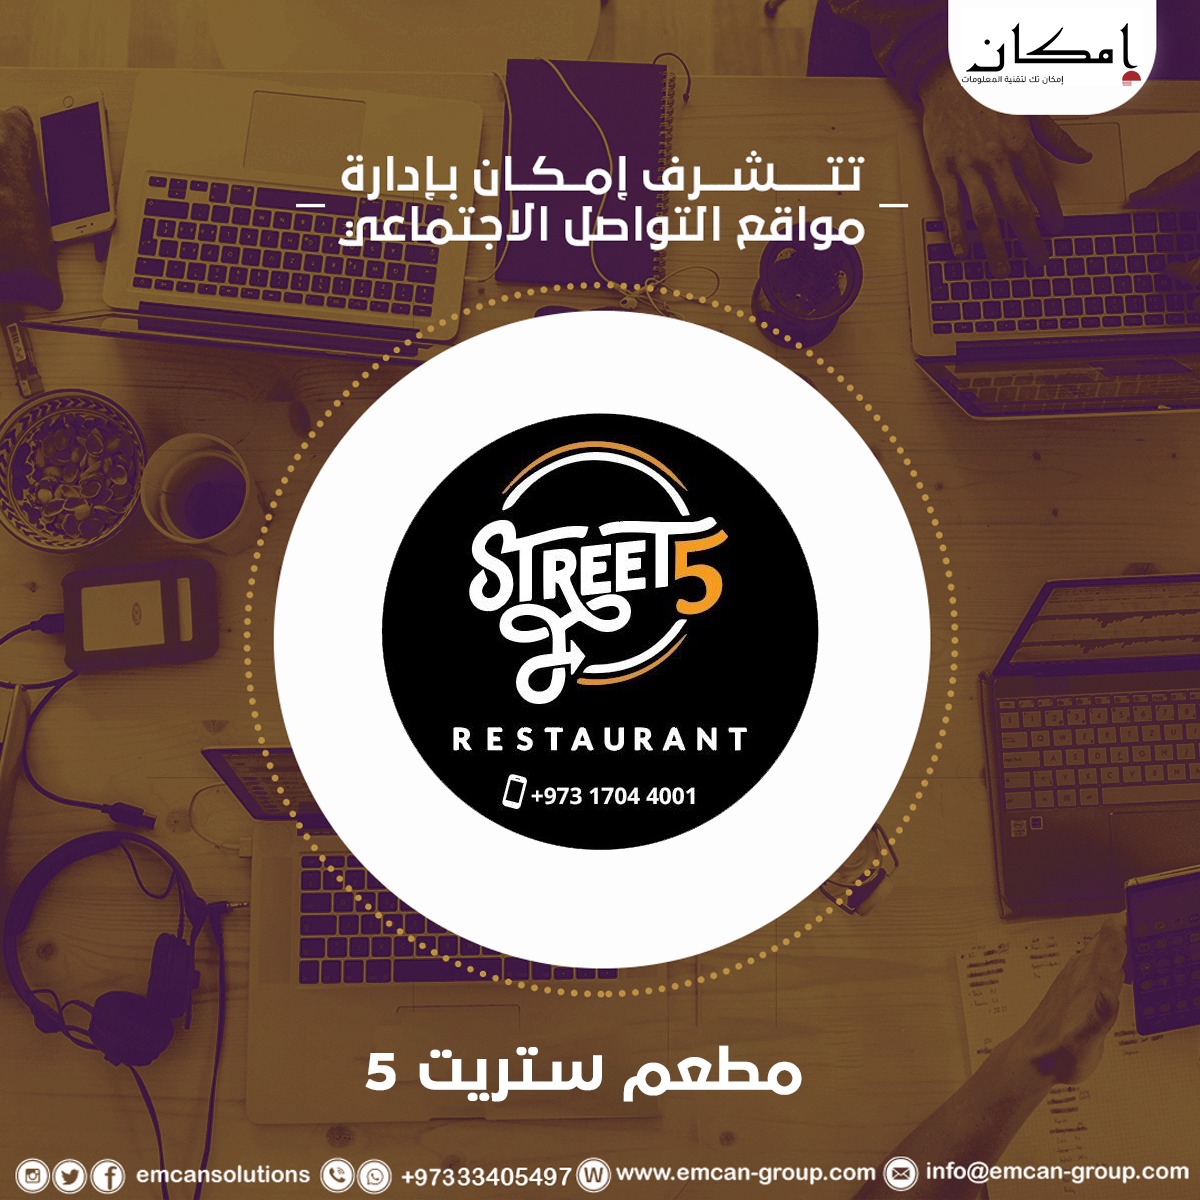 Social media management for Street Five restaurant